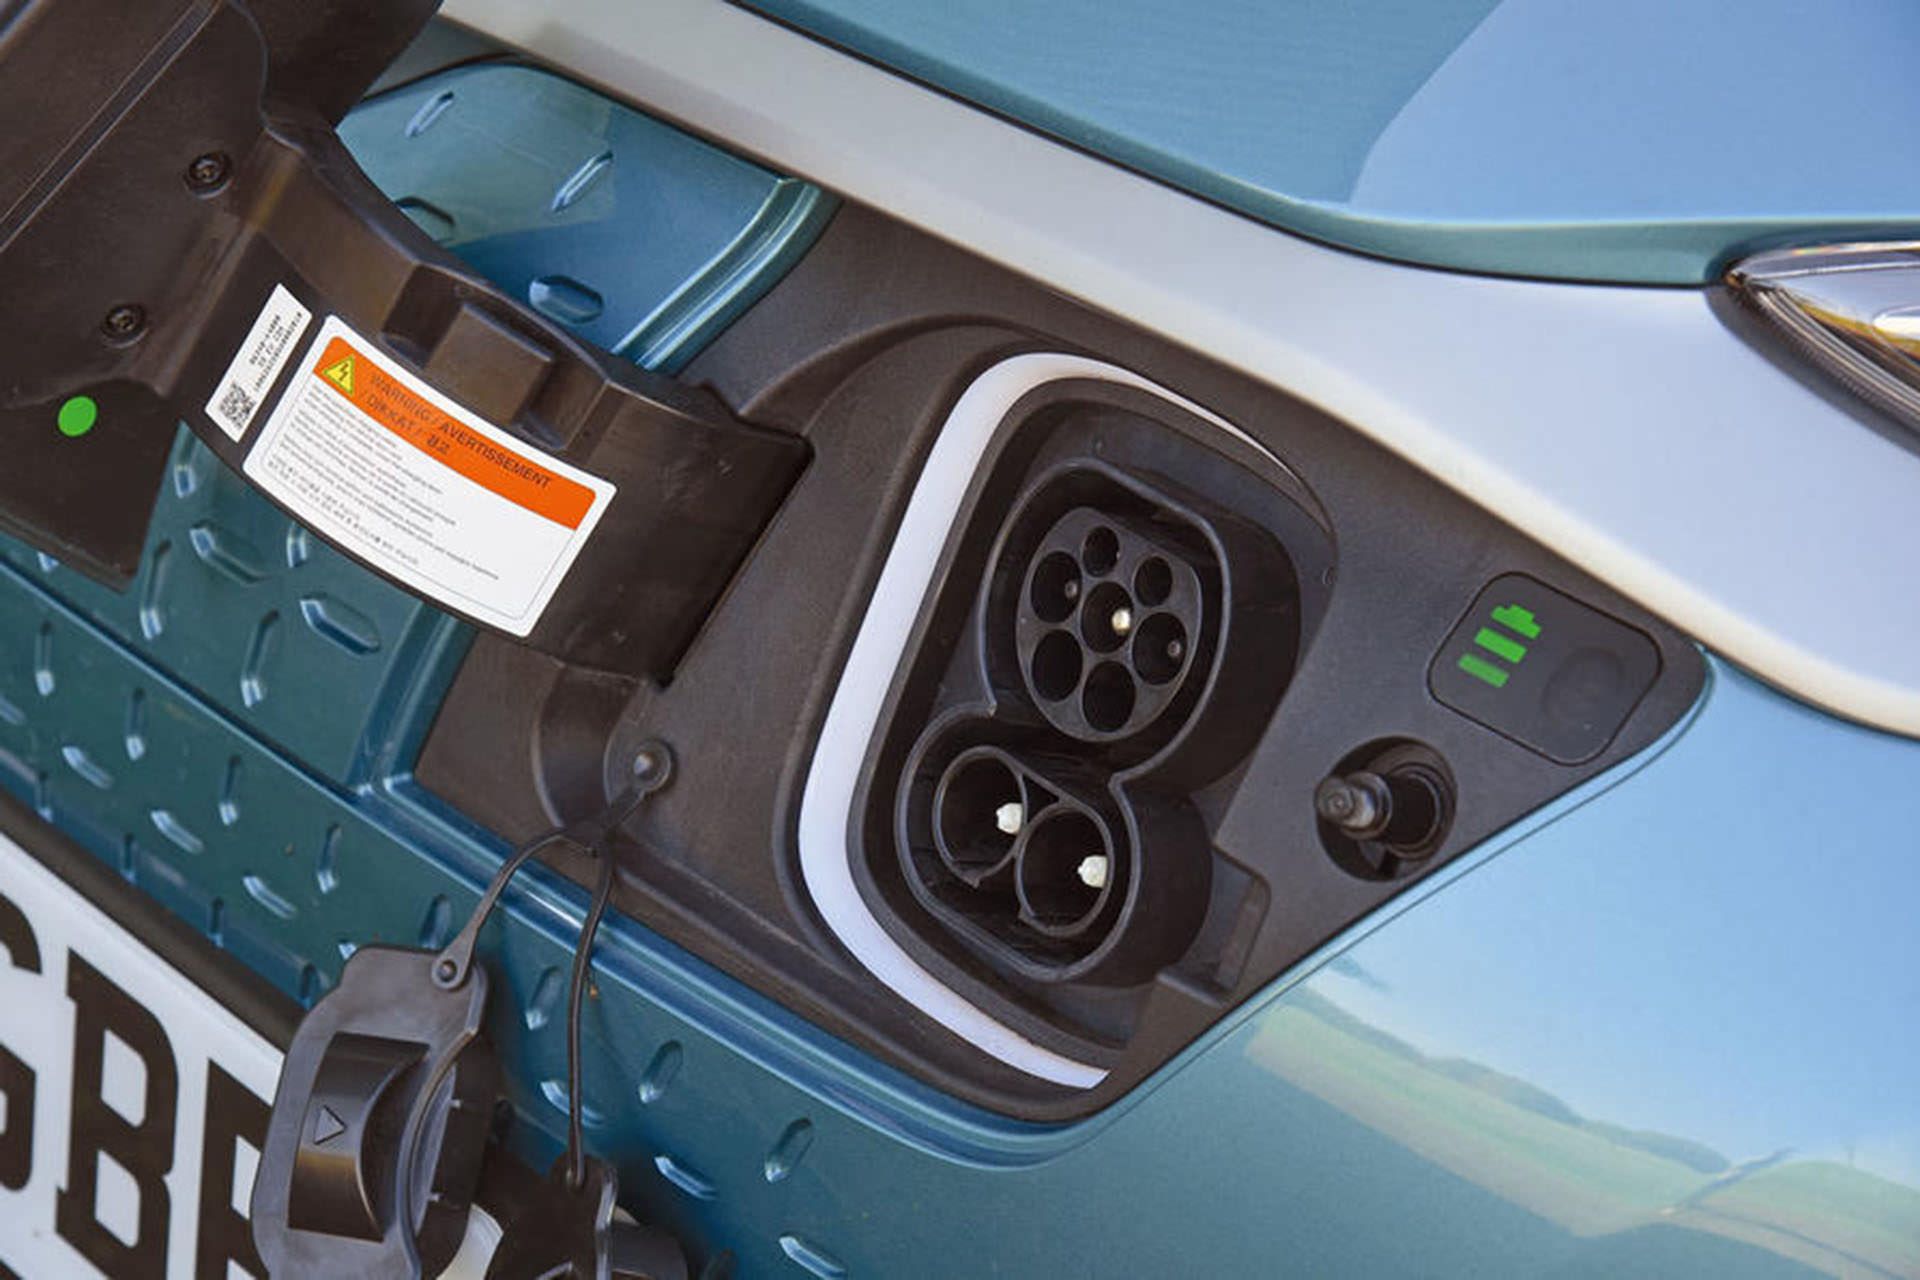 مرجع متخصصين ايران شارژر خودروي الكتريكي / electric car charger